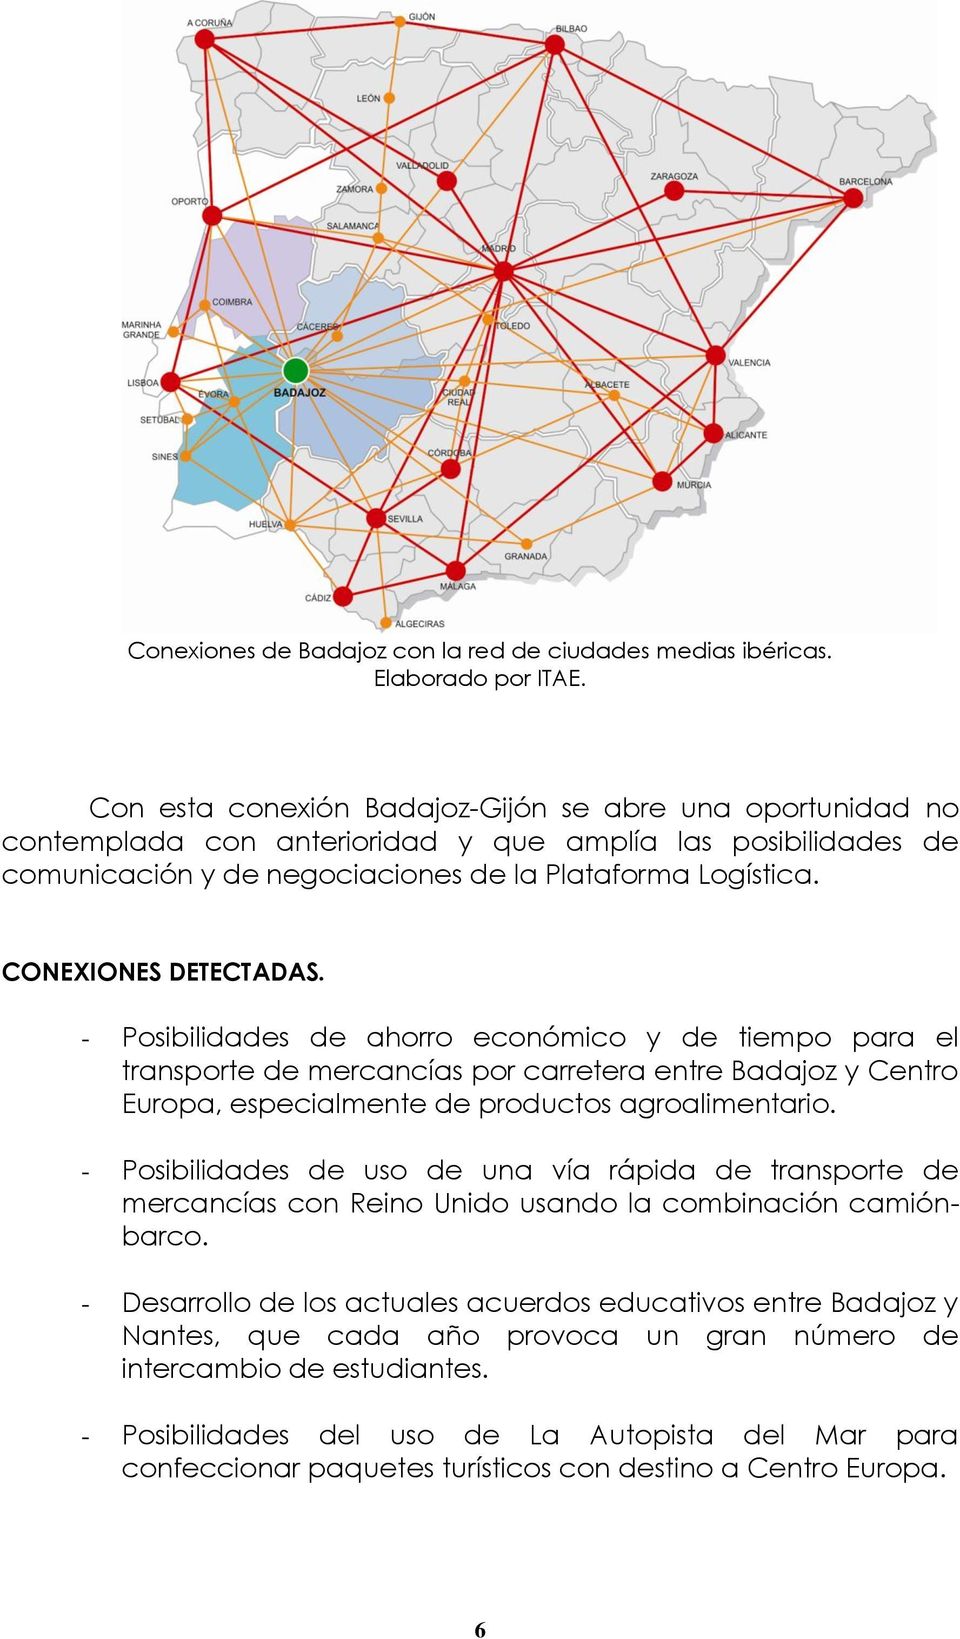 CONEXIONES DETECTADAS. - Posibilidades de ahorro económico y de tiempo para el transporte de mercancías por carretera entre Badajoz y Centro Europa, especialmente de productos agroalimentario.